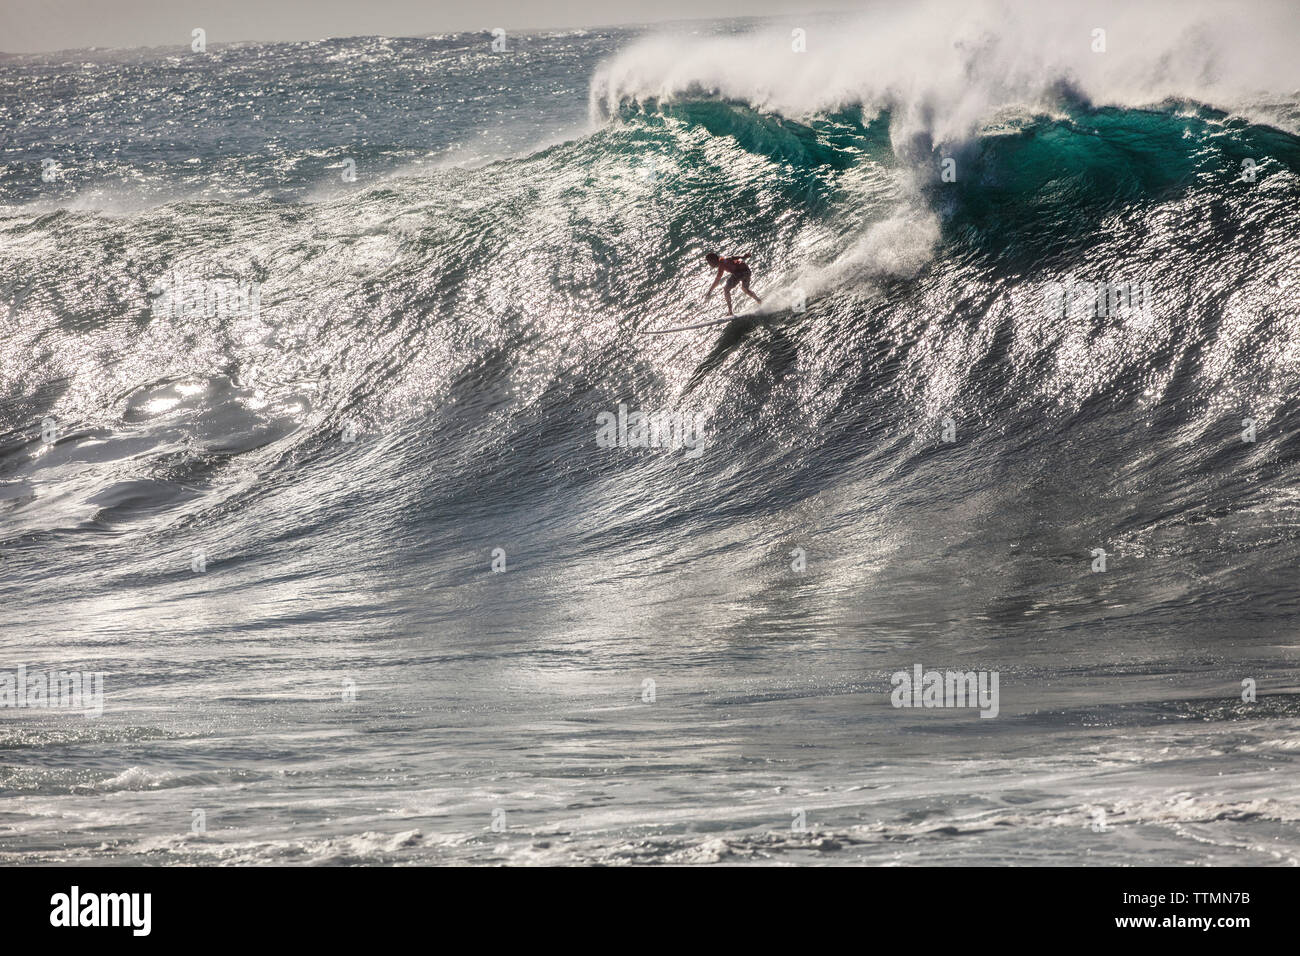 HAWAII, Oahu, Côte-Nord, Eddie Aikau, 2016, les surfeurs en compétition dans l'Eddie Aikau big wave 2016 compétition de surf, Waimea Bay Banque D'Images